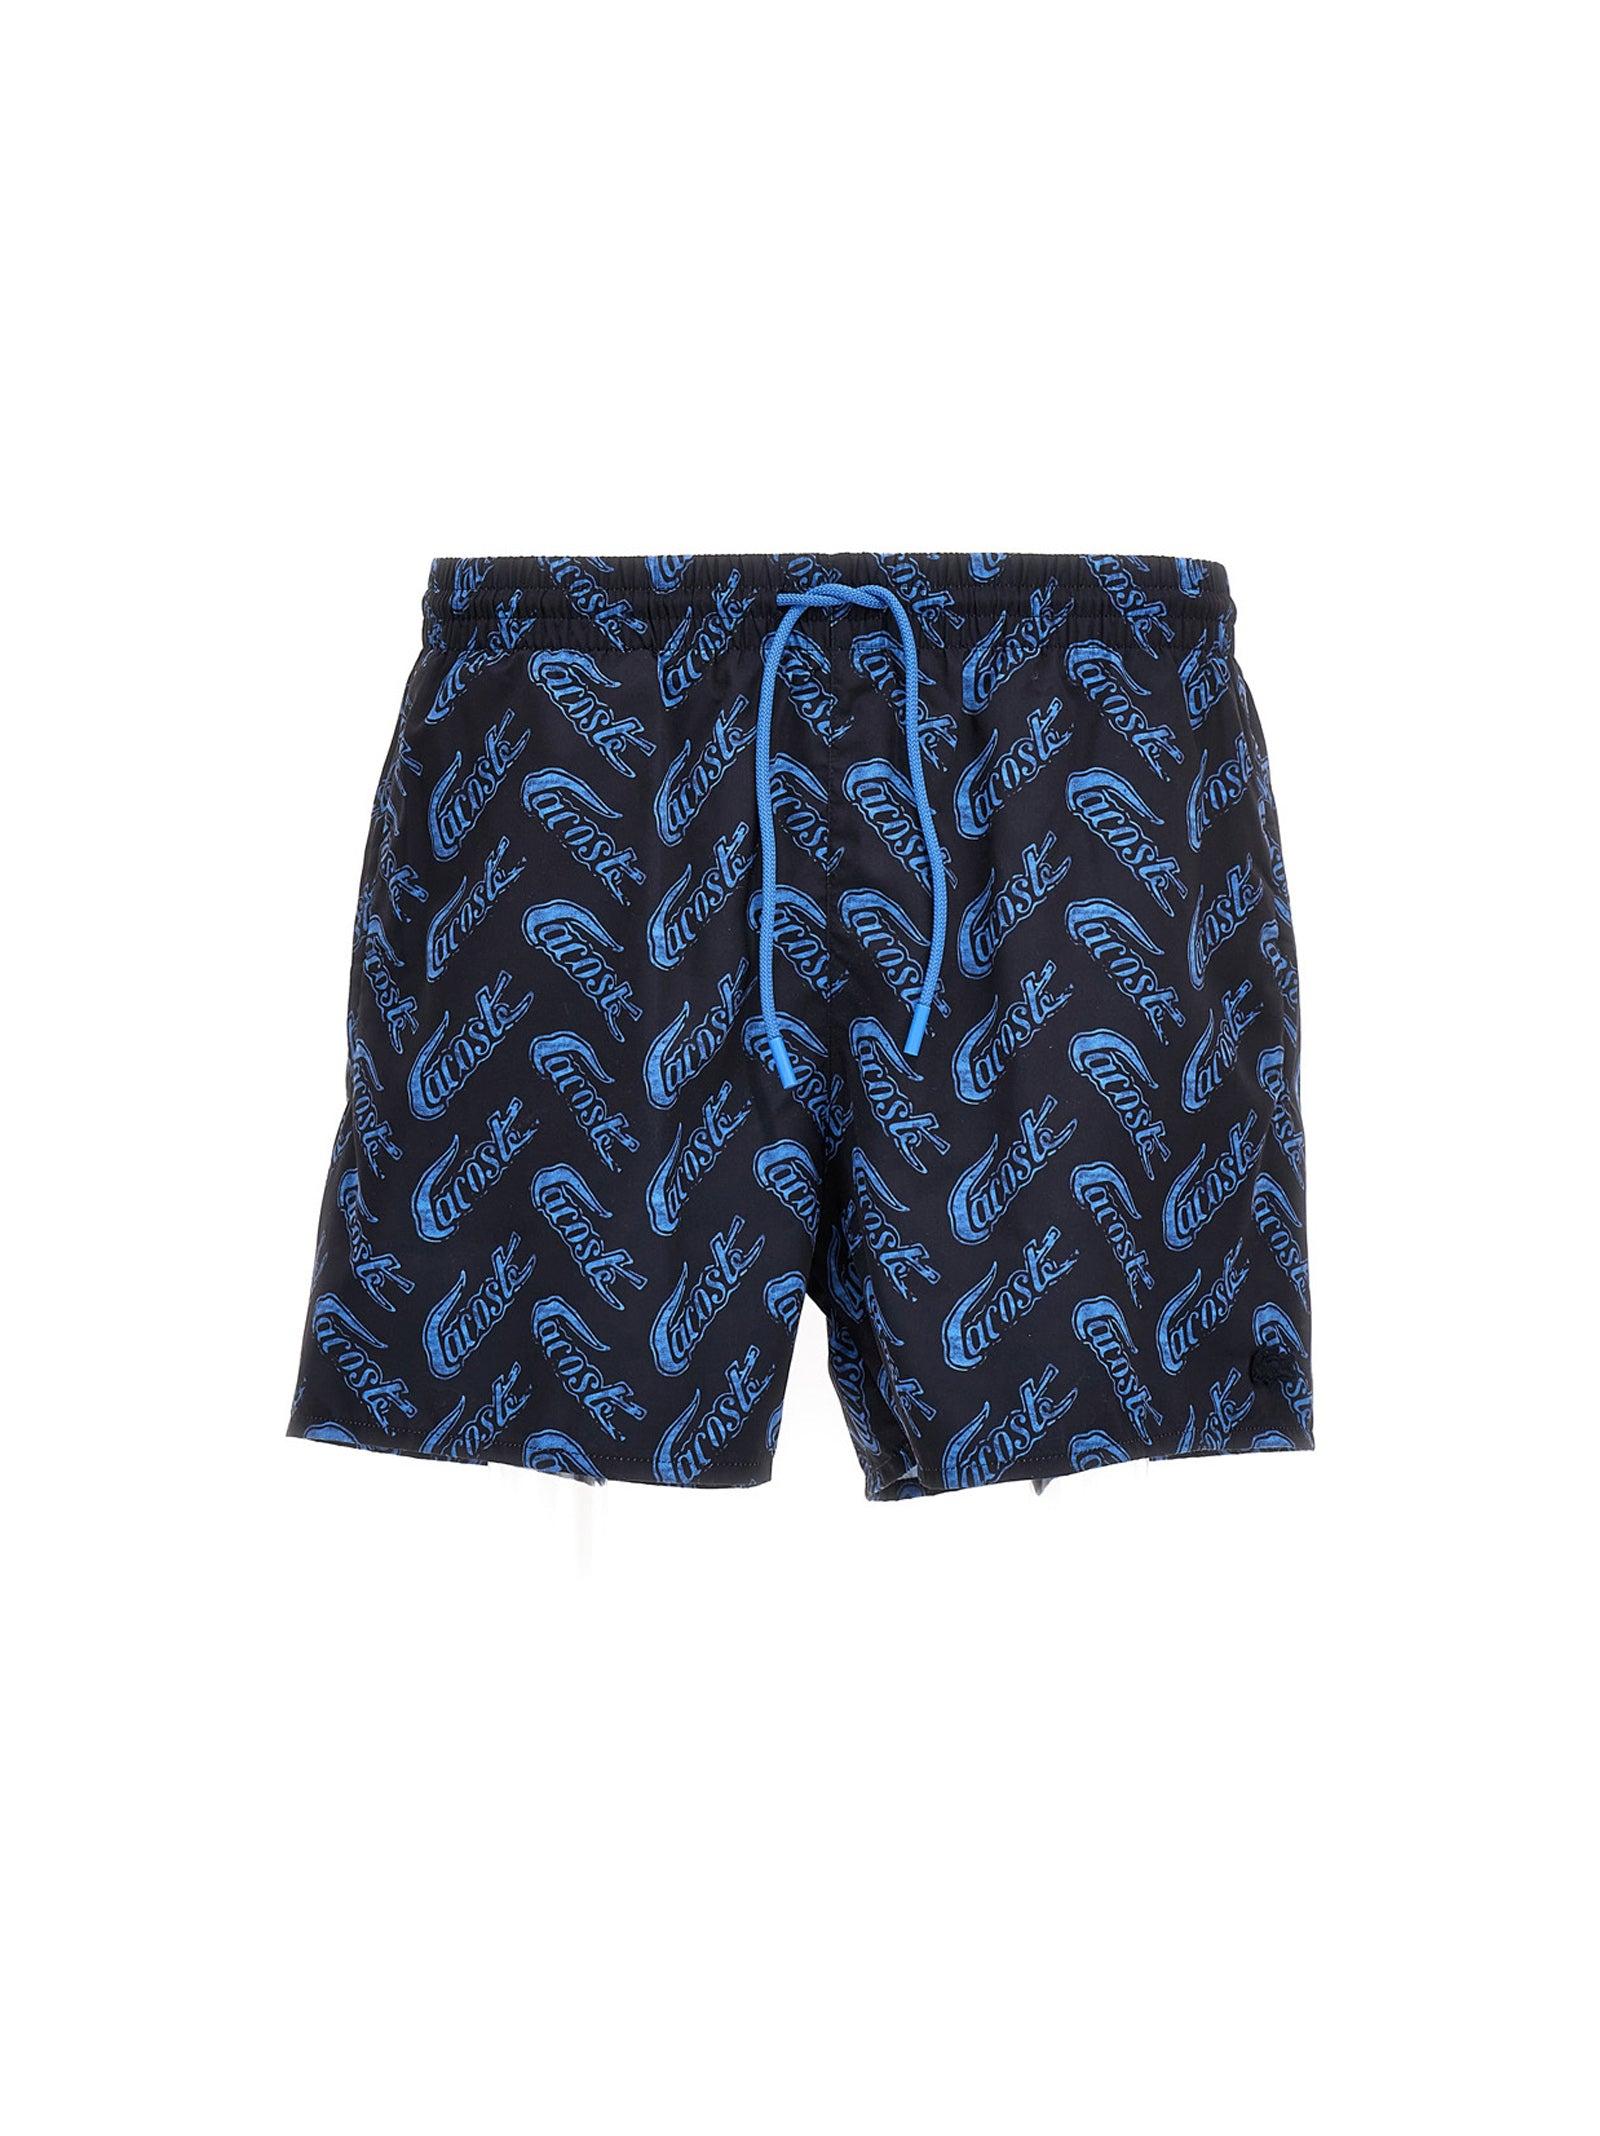 Lacoste Logo Print Swimming Trunks Beachwear Blue for Men | Lyst UK